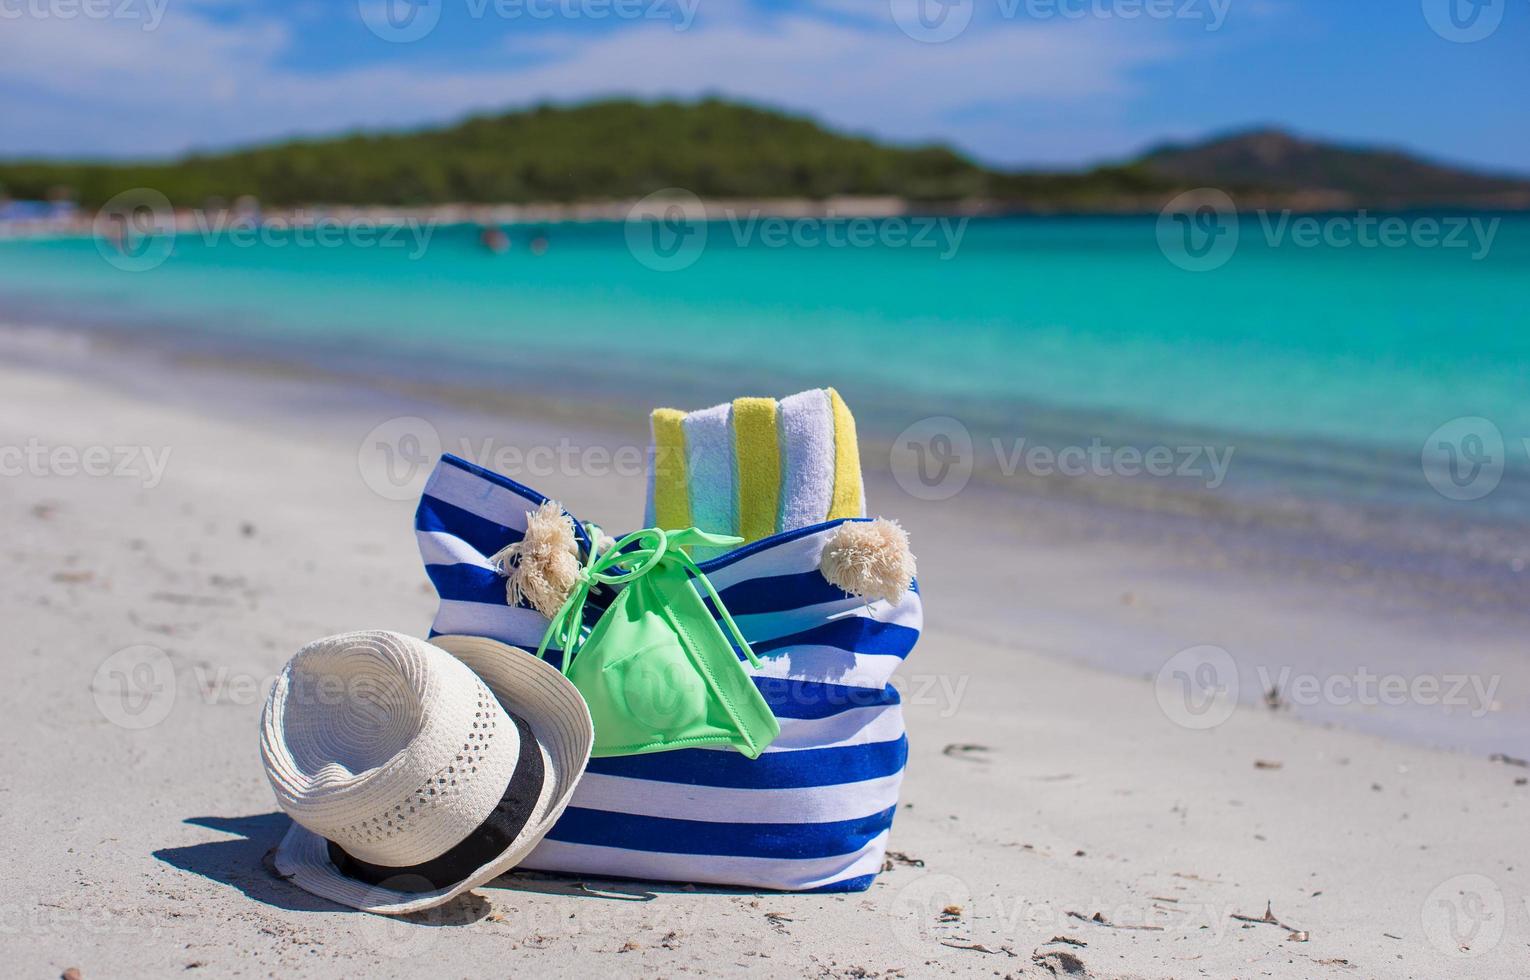 bolsa de rayas, sombrero de paja, bloqueador solar y frisbee en una playa tropical de arena blanca foto